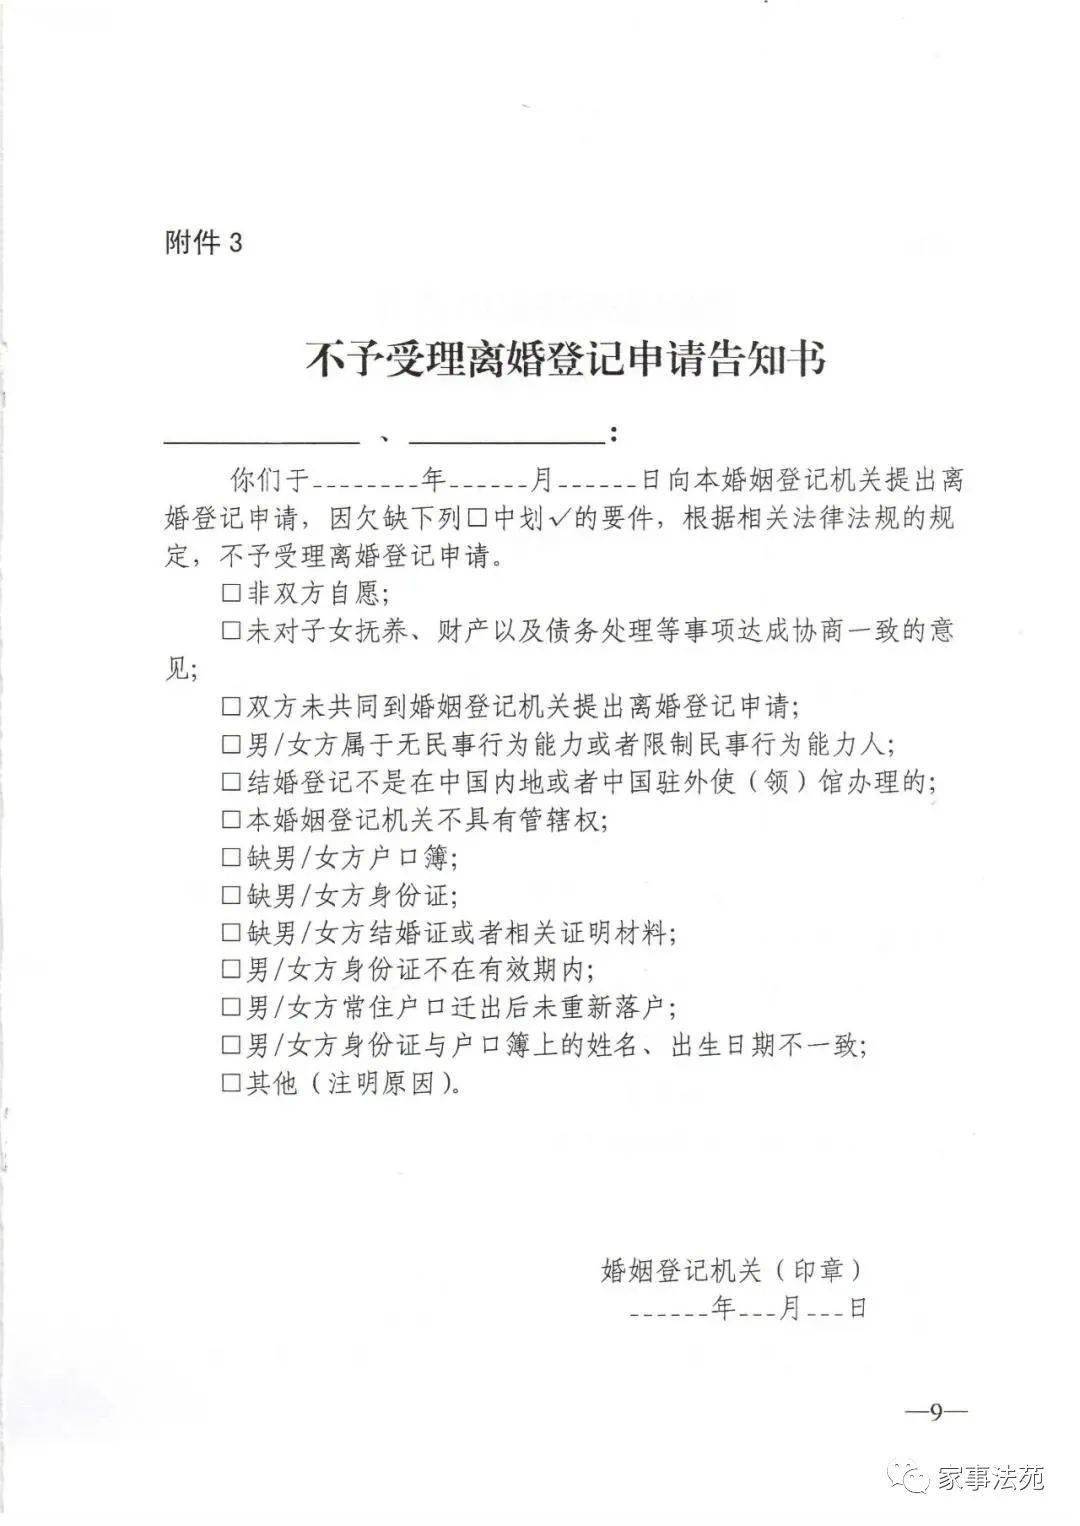 民政部关于贯彻落实 中华人民共和国民法典 中有关婚姻登记规定的通知 家事动态 来源 中华人民共和国民政部官网